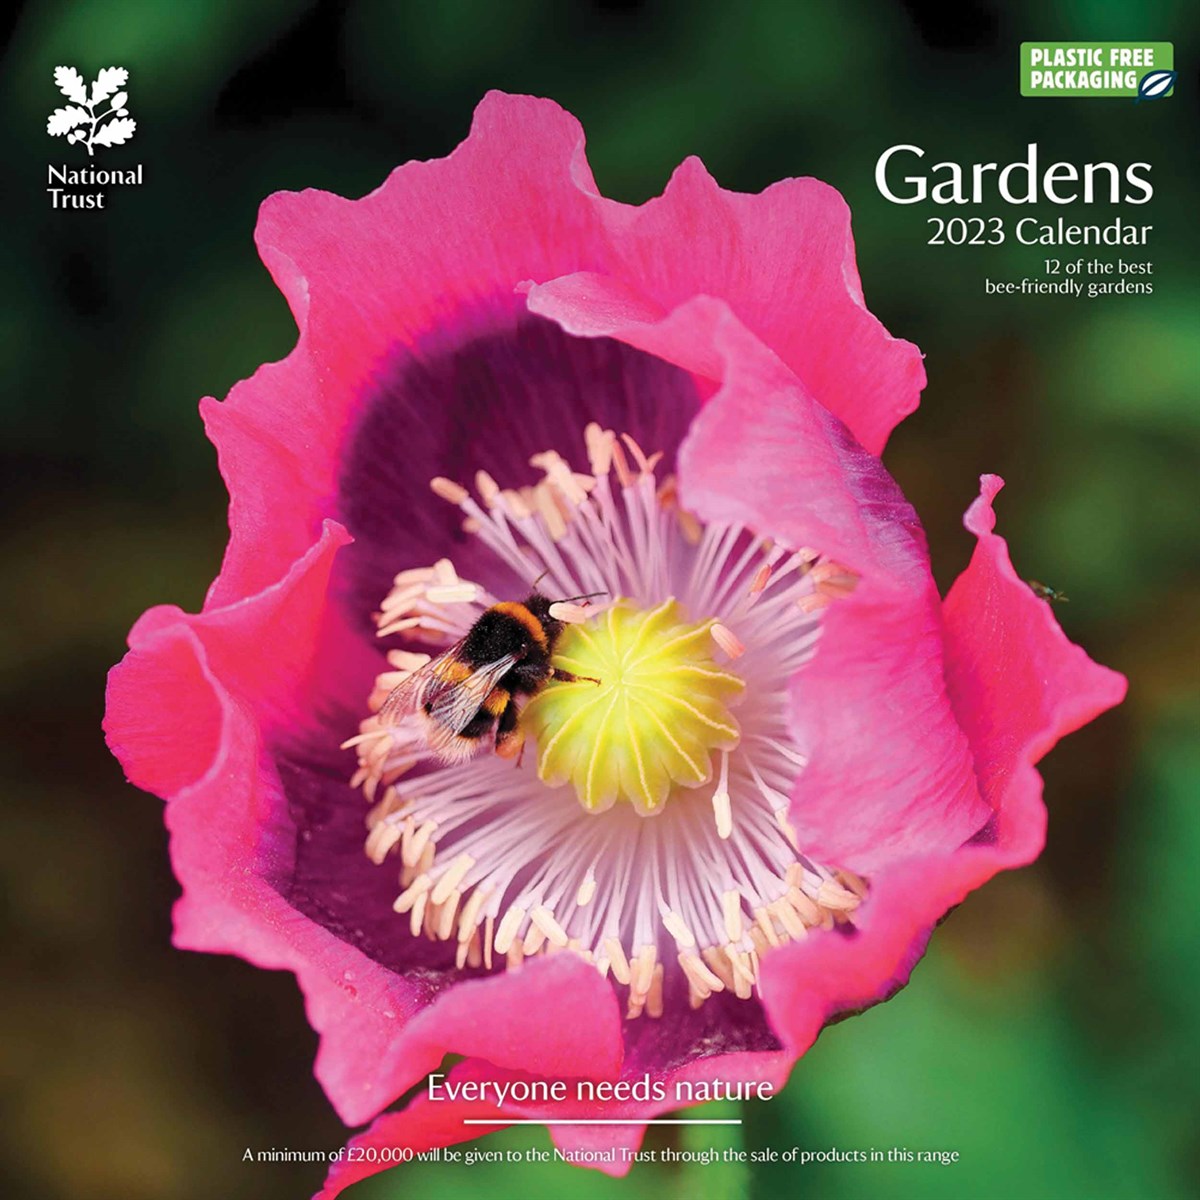 National Trust, Gardens 2023 Calendars